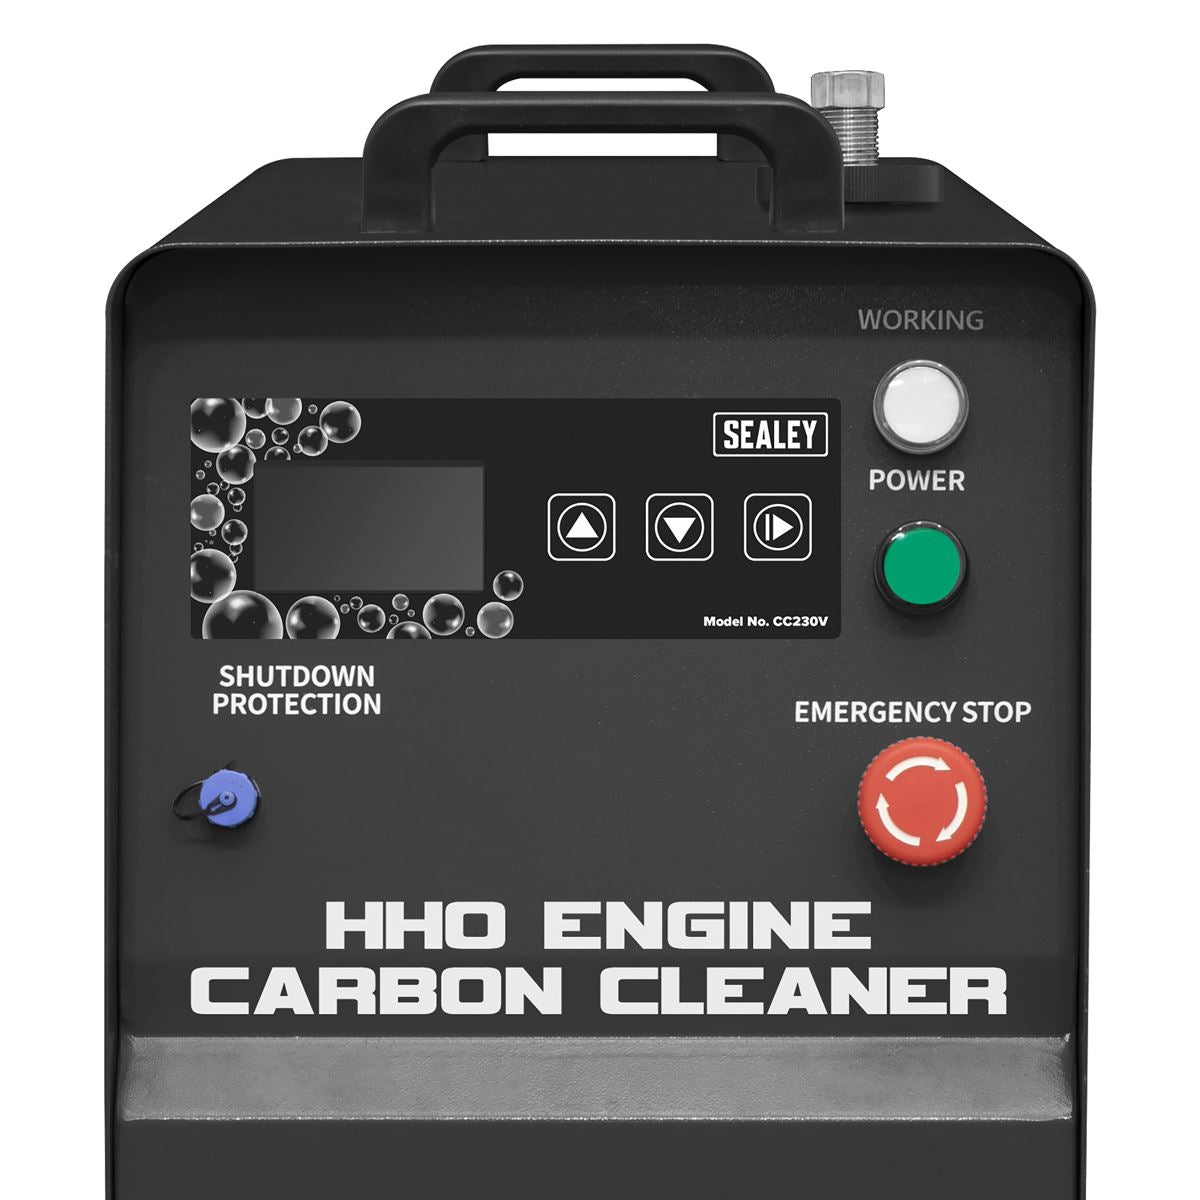 Sealey HHO Engine Carbon Cleaner 230V